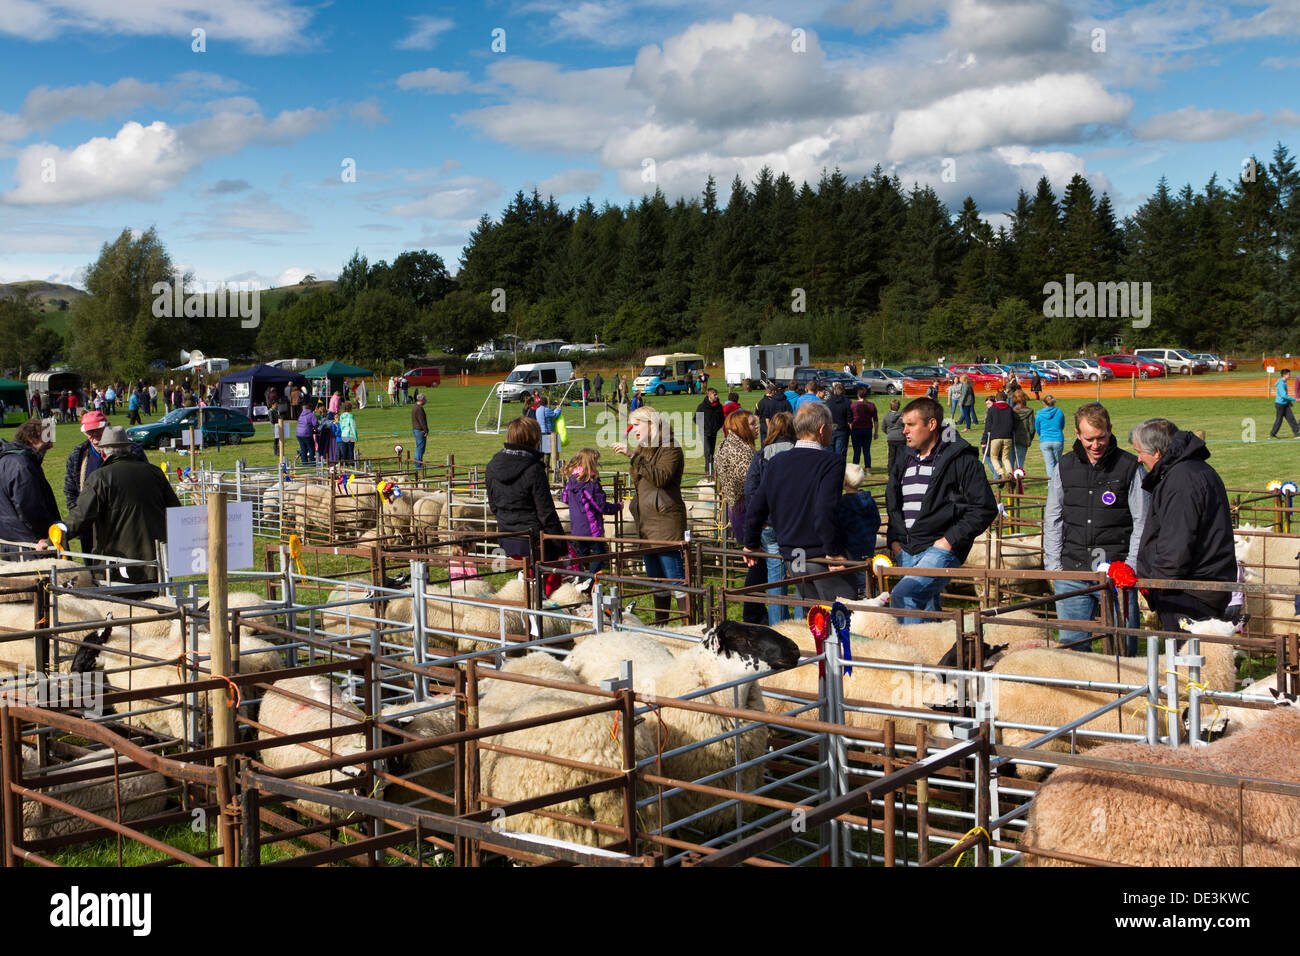 Moutons primés dans les stylos à un pays de Galles show, Powys, Wales, UK Banque D'Images